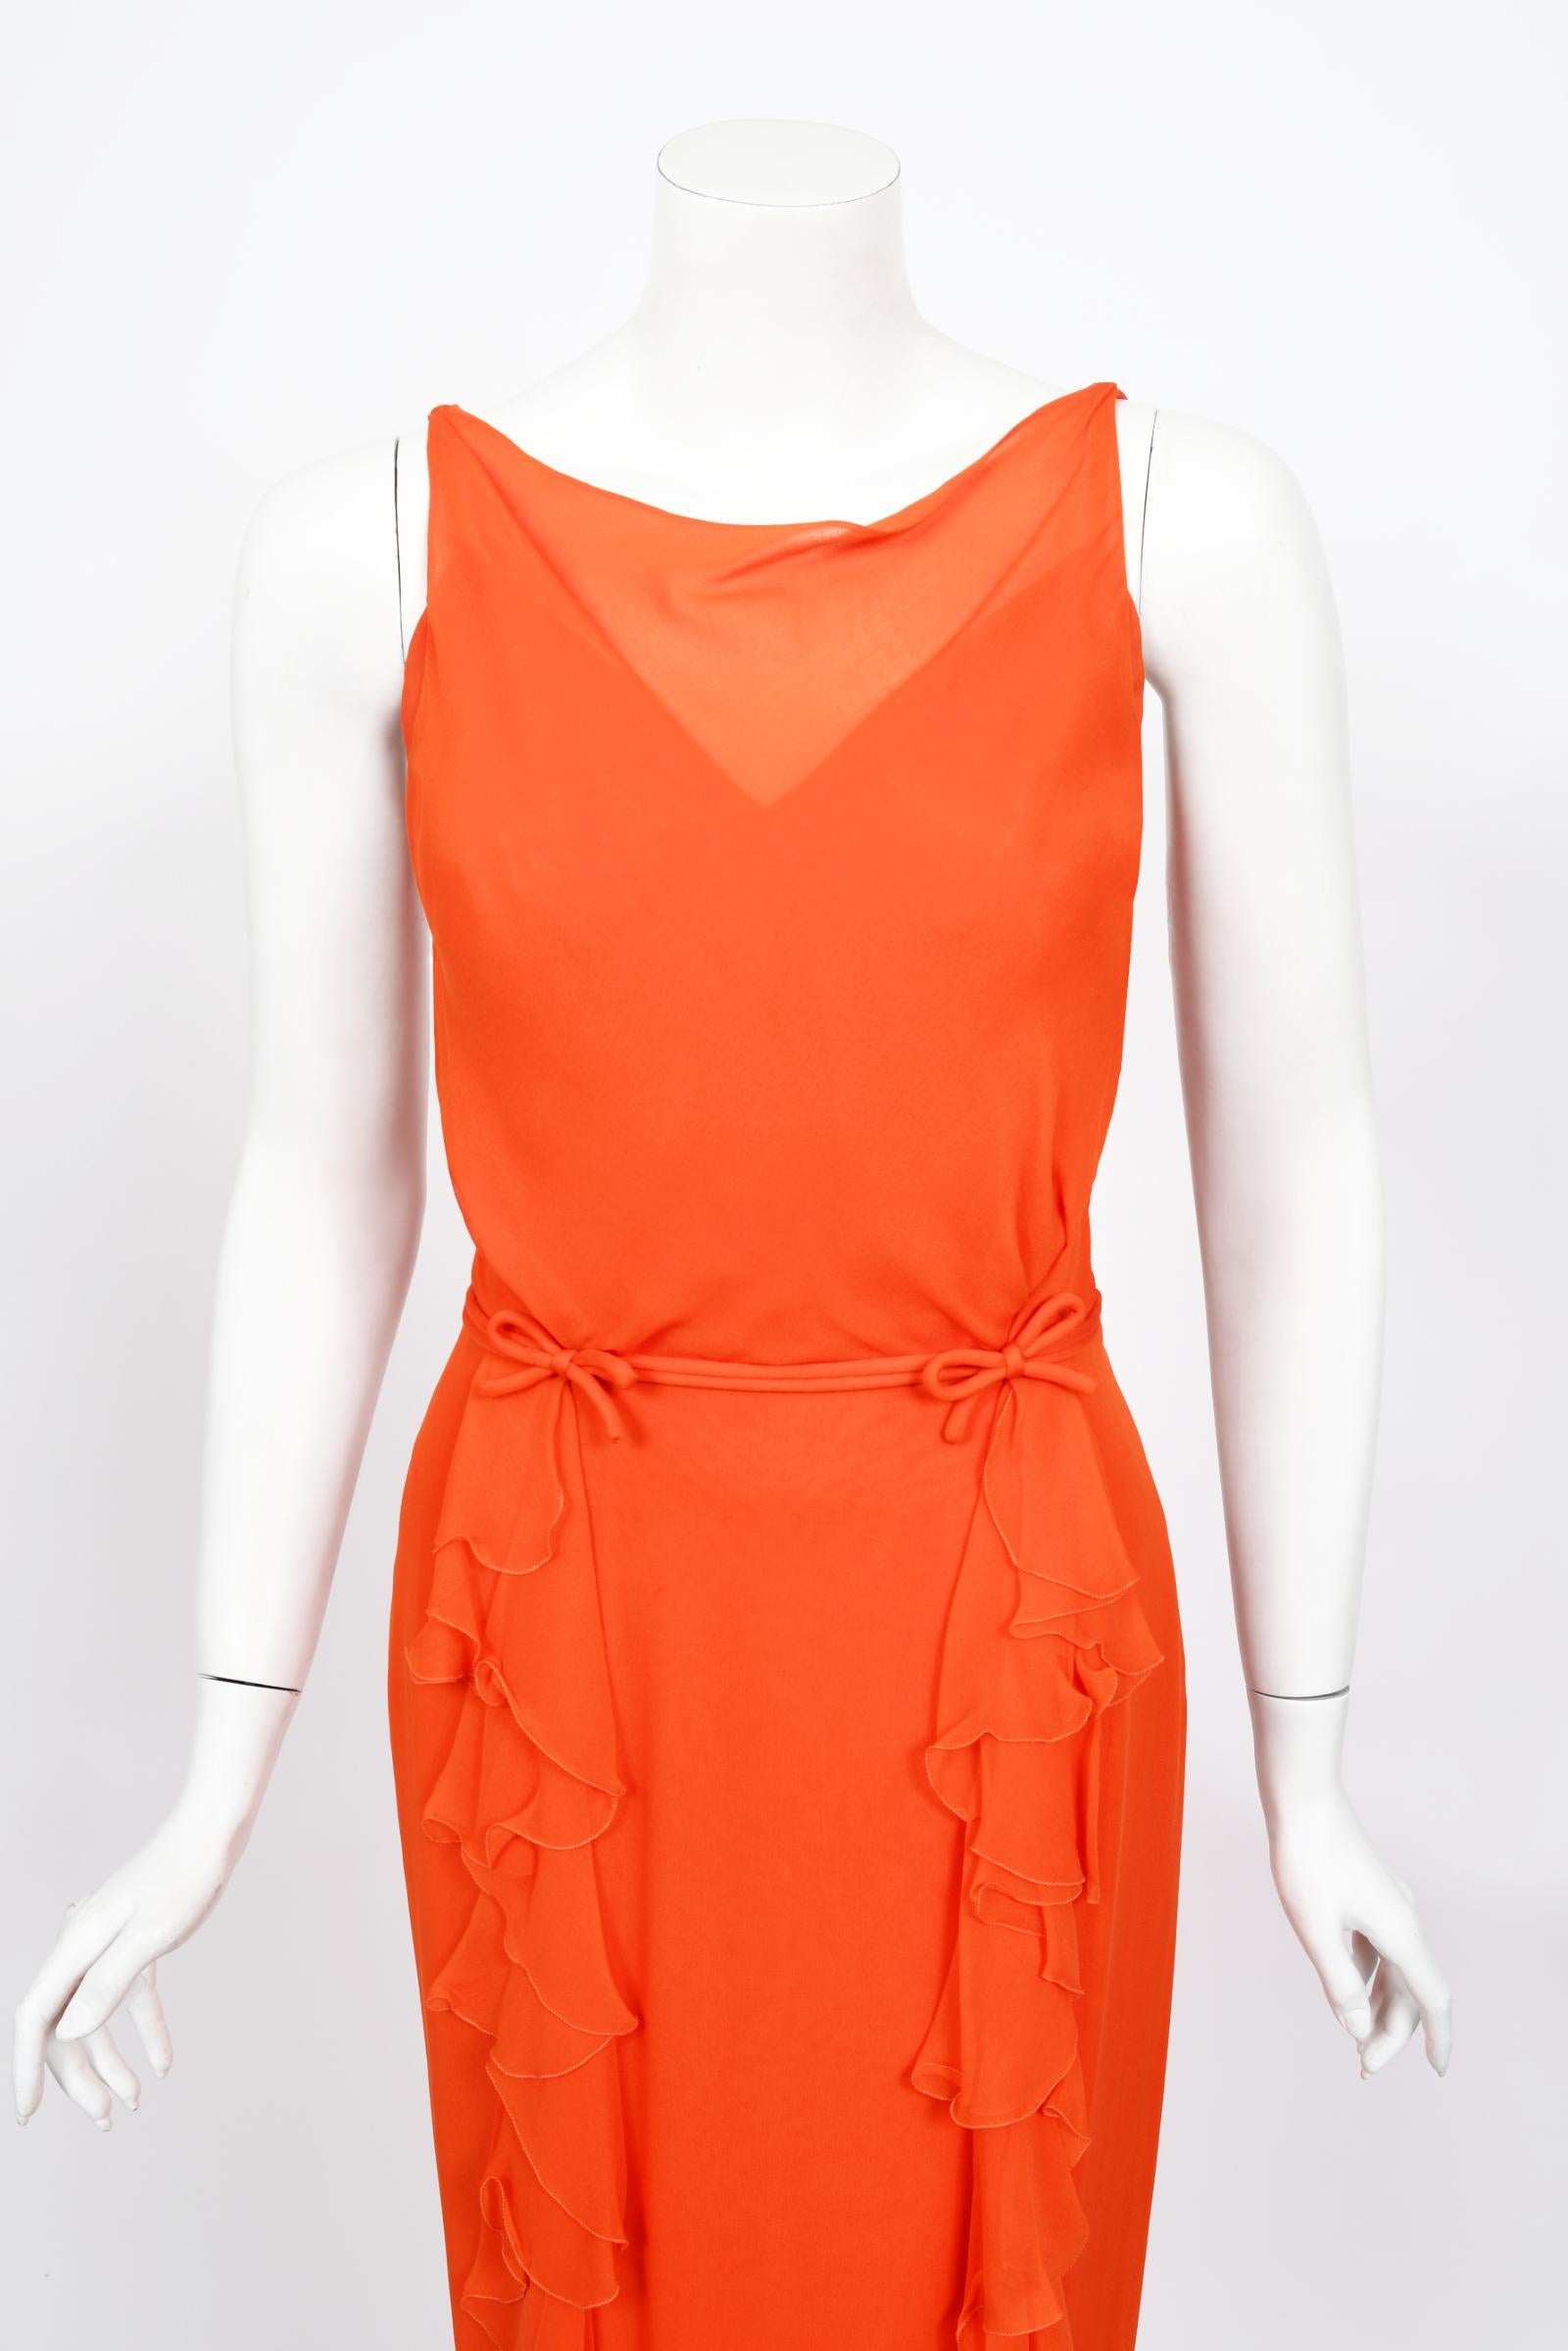 Un ensemble de robe sablier en mousseline de soie semi-transparente orange vibrant, incroyablement chic et très rare, datant du milieu des années 1960, de la marque Helen Rose. Helen Rose a remporté deux Oscars pour la meilleure conception de